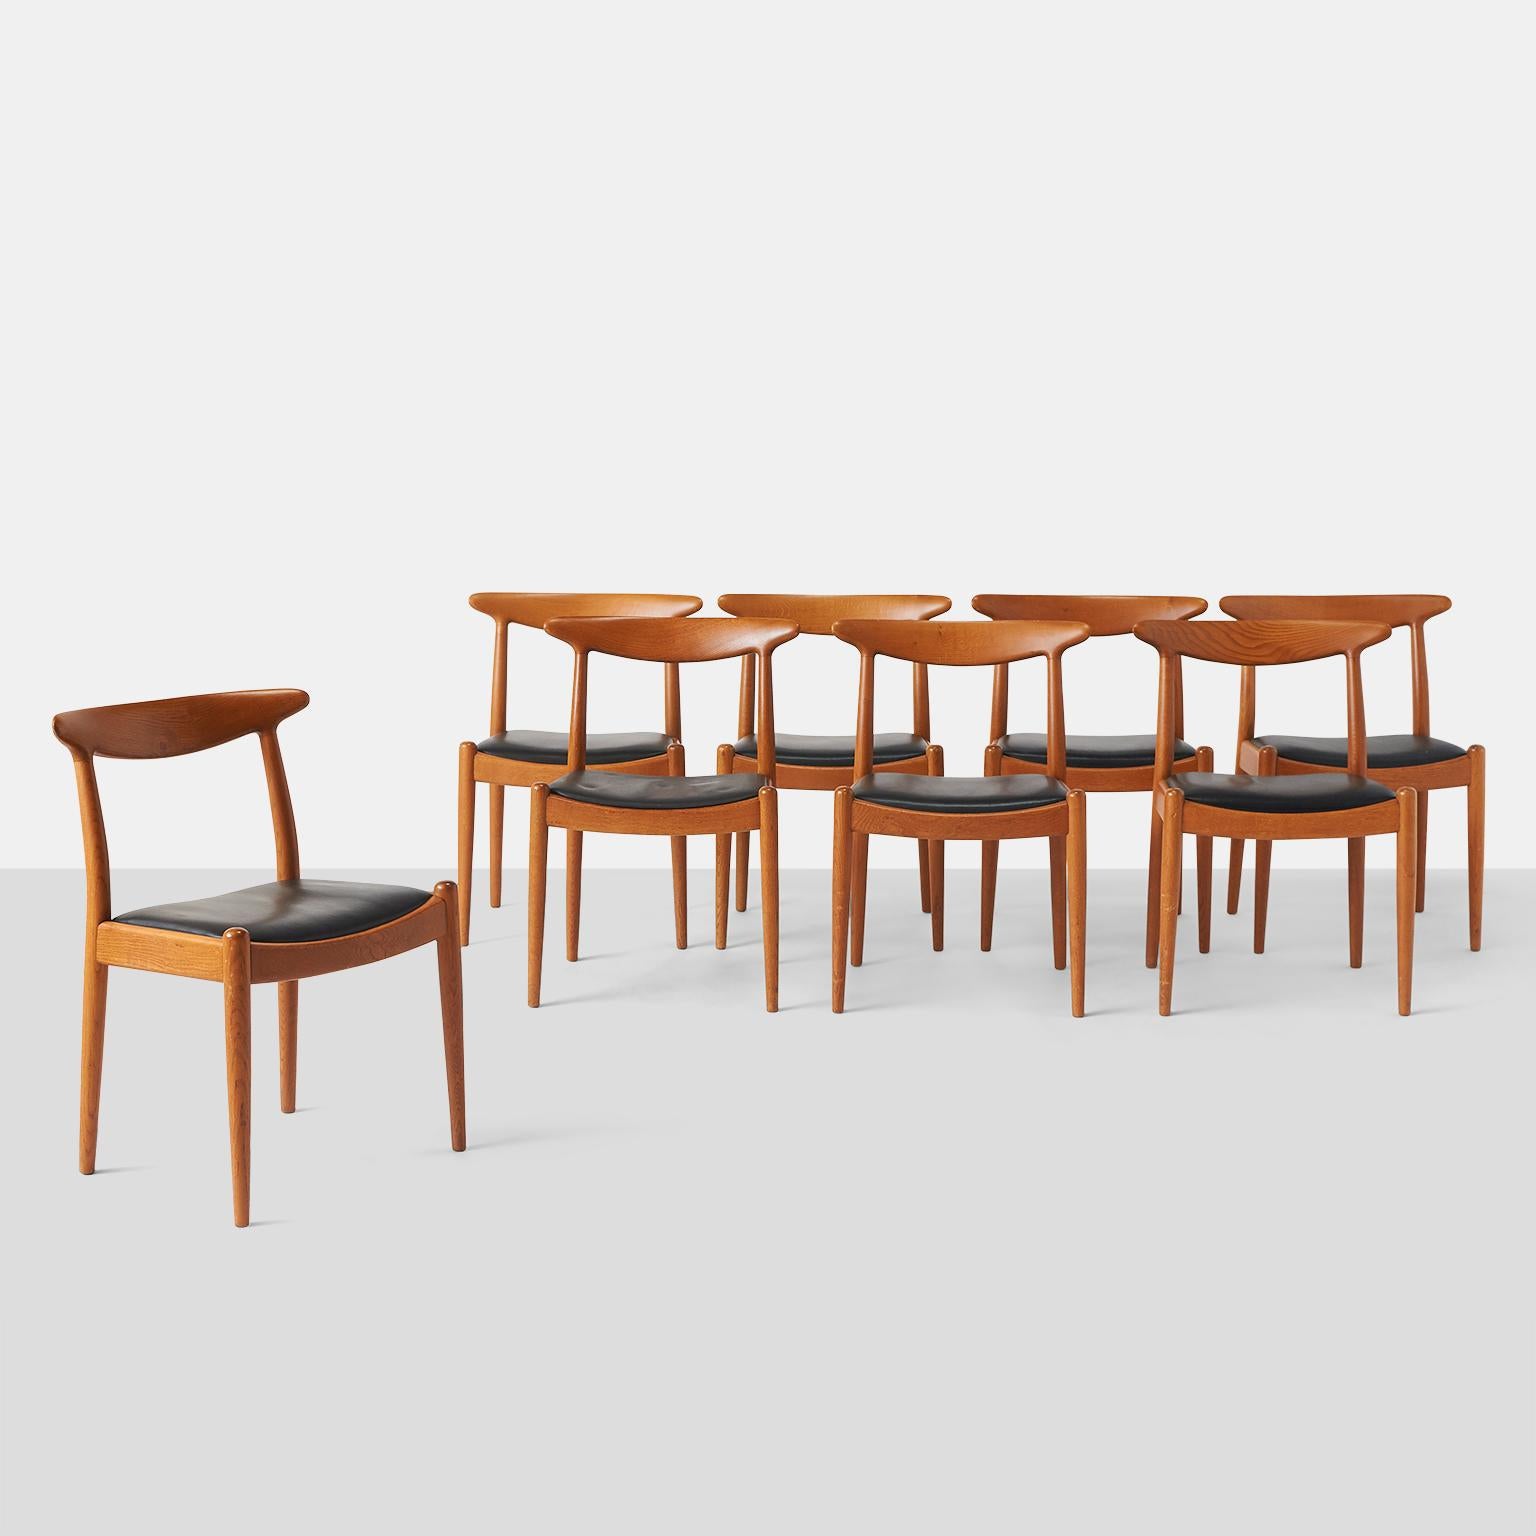 Ensemble de huit chaises de salle à manger W2 en chêne, avec assise rembourrée noire et pieds fuselés.

Estampillé A&M Madsens, fabriqué au Danemark, Hans J-One.